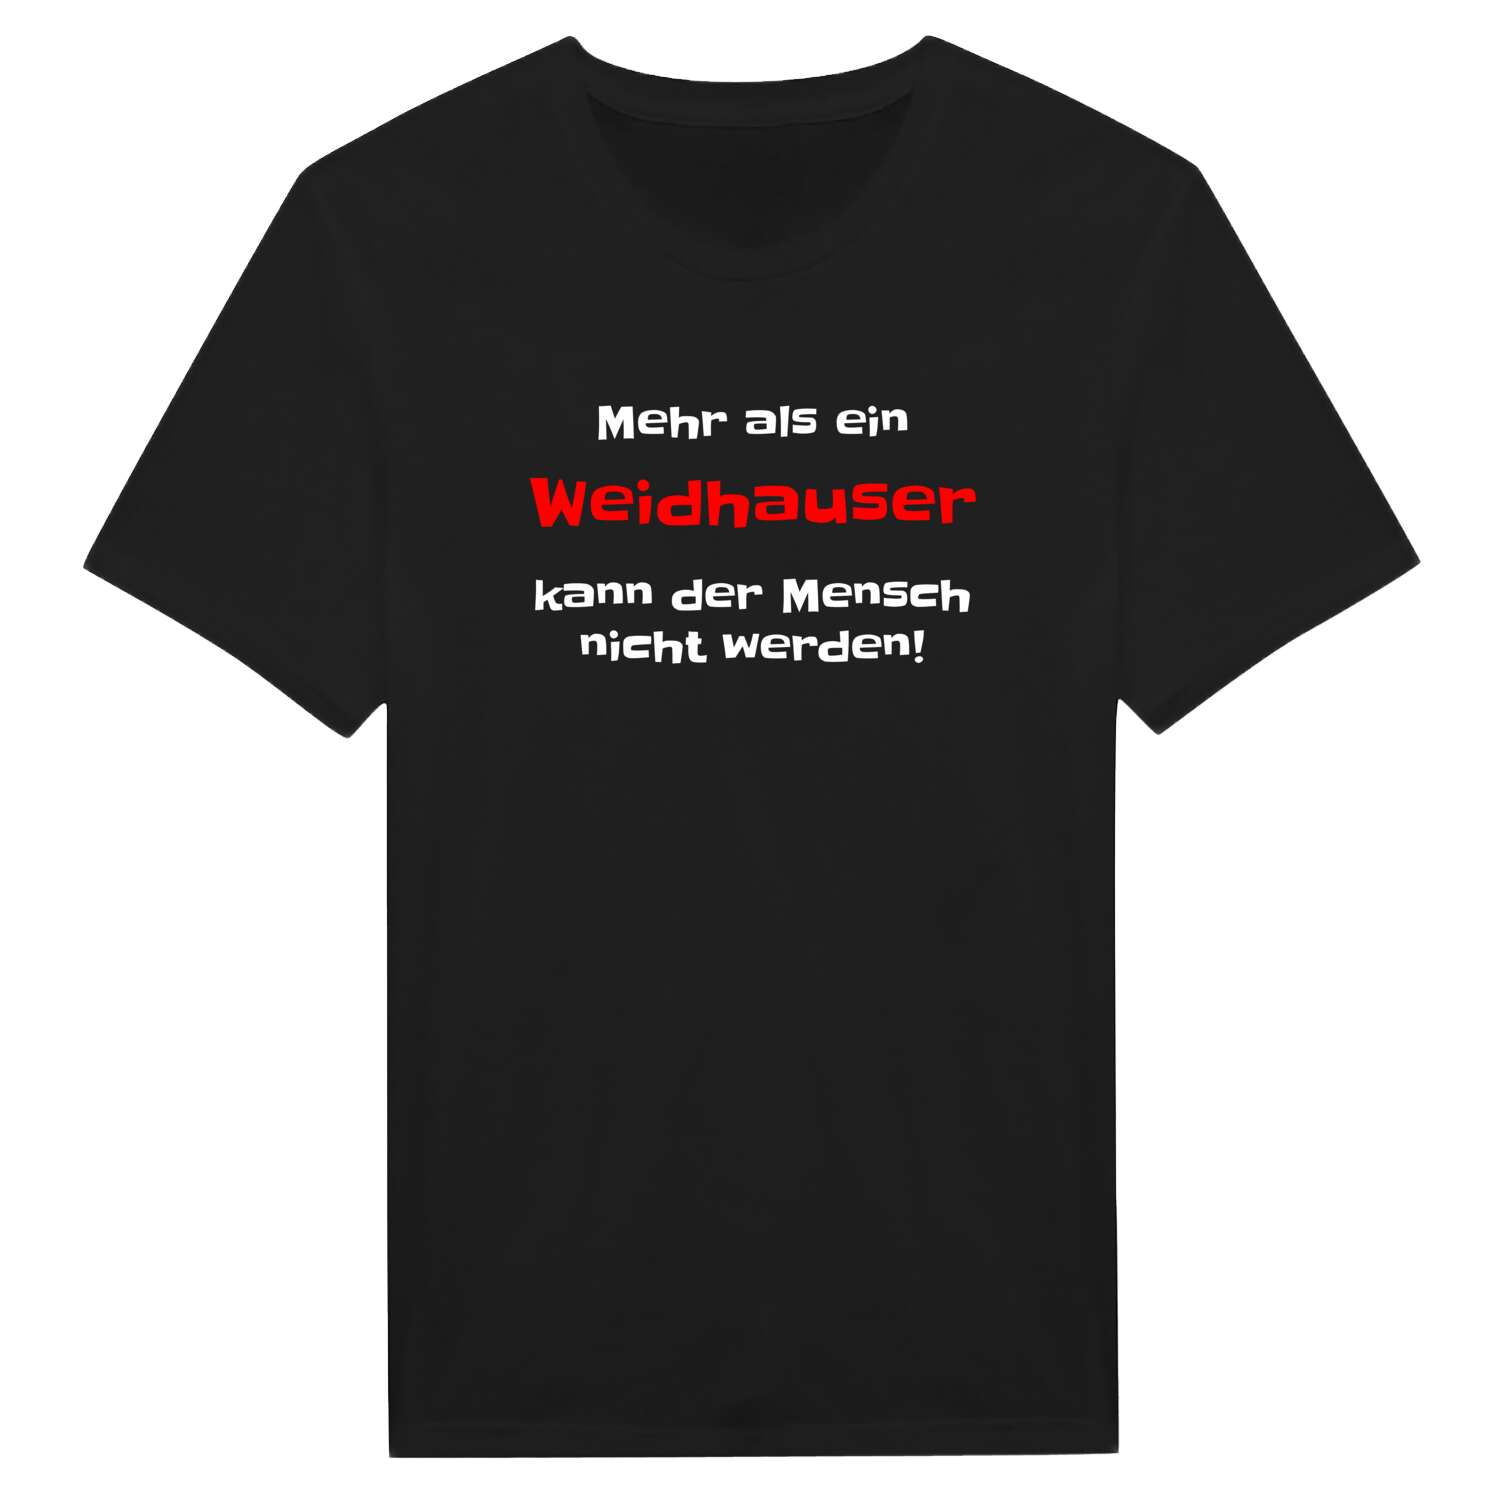 Weidhaus T-Shirt »Mehr als ein«